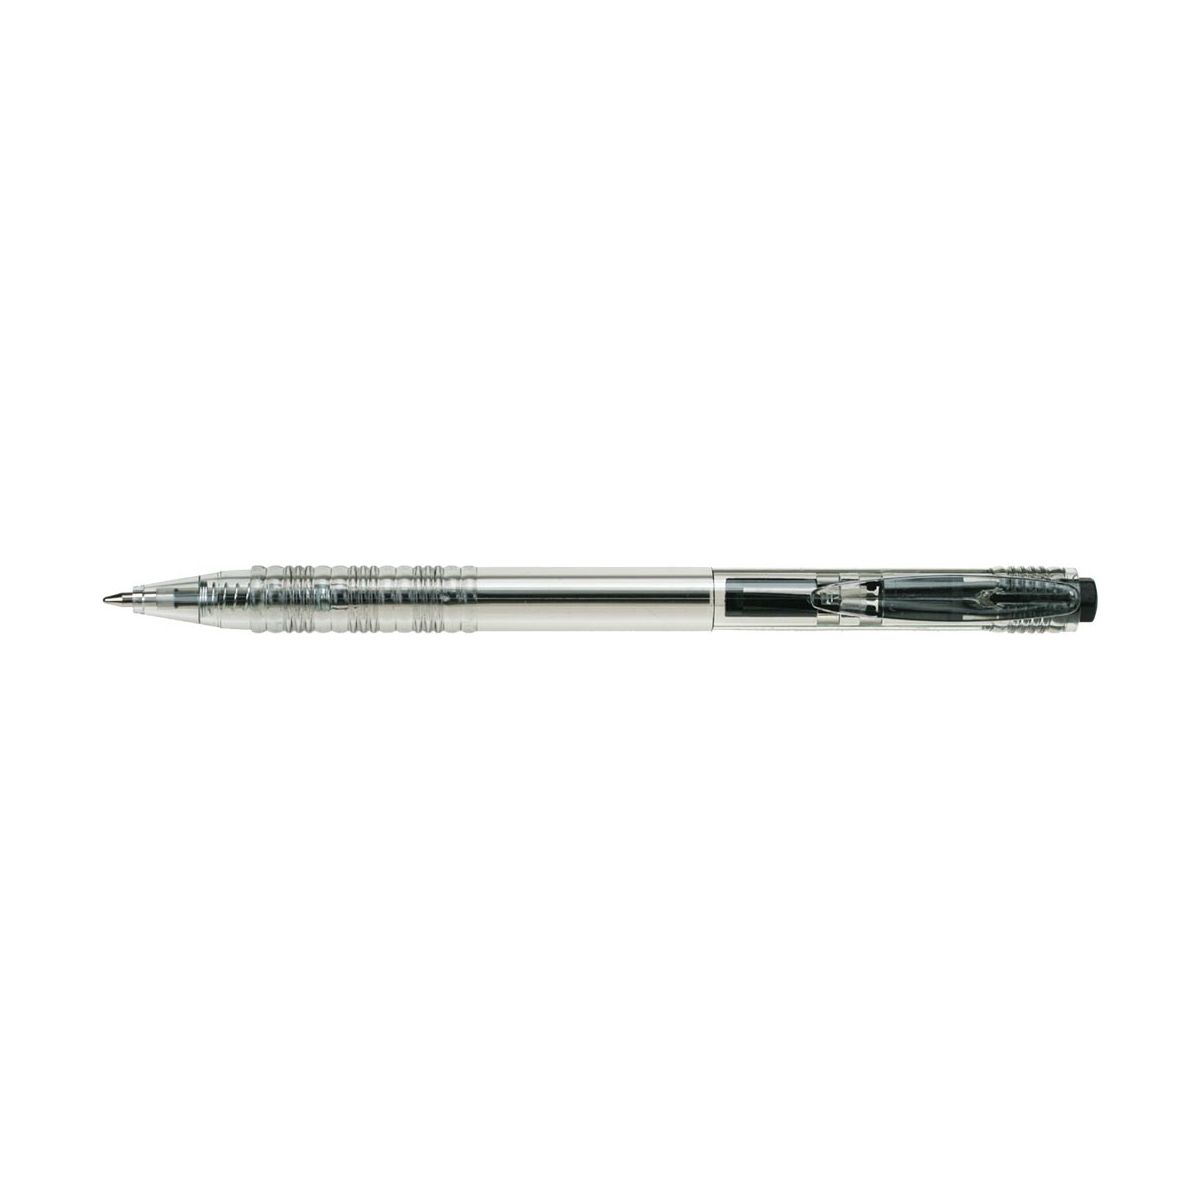 Długopis automatyczny Cristal ABP04871 M&G 0,7 mm wkład czarny